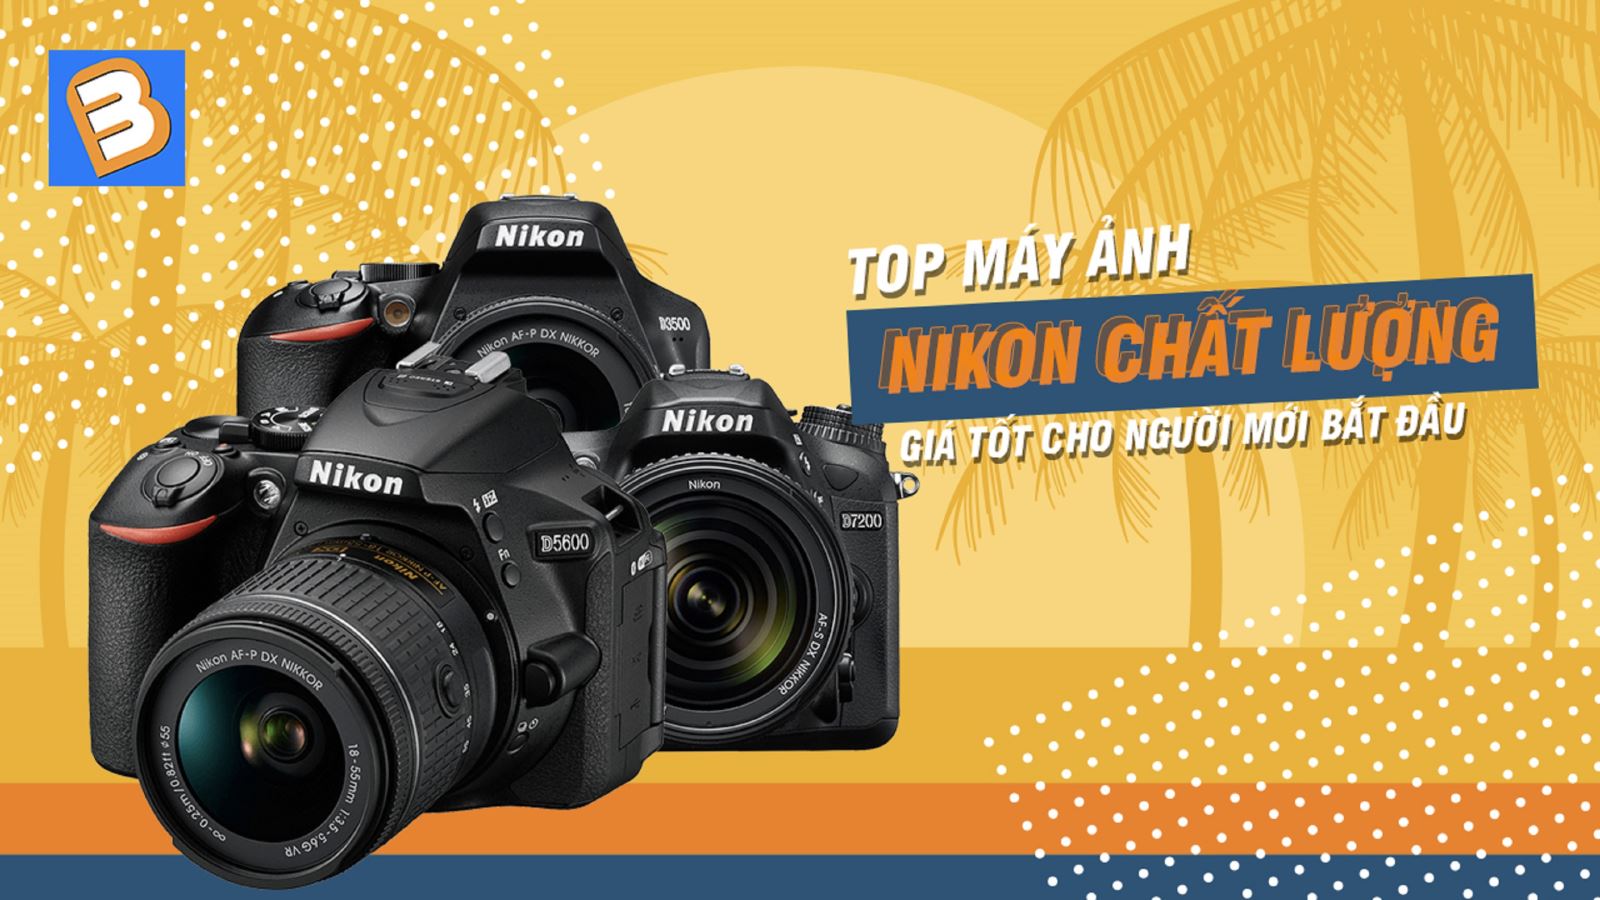 Top máy ảnh Nikon chất lượng, giá tốt cho người mới bắt đầu